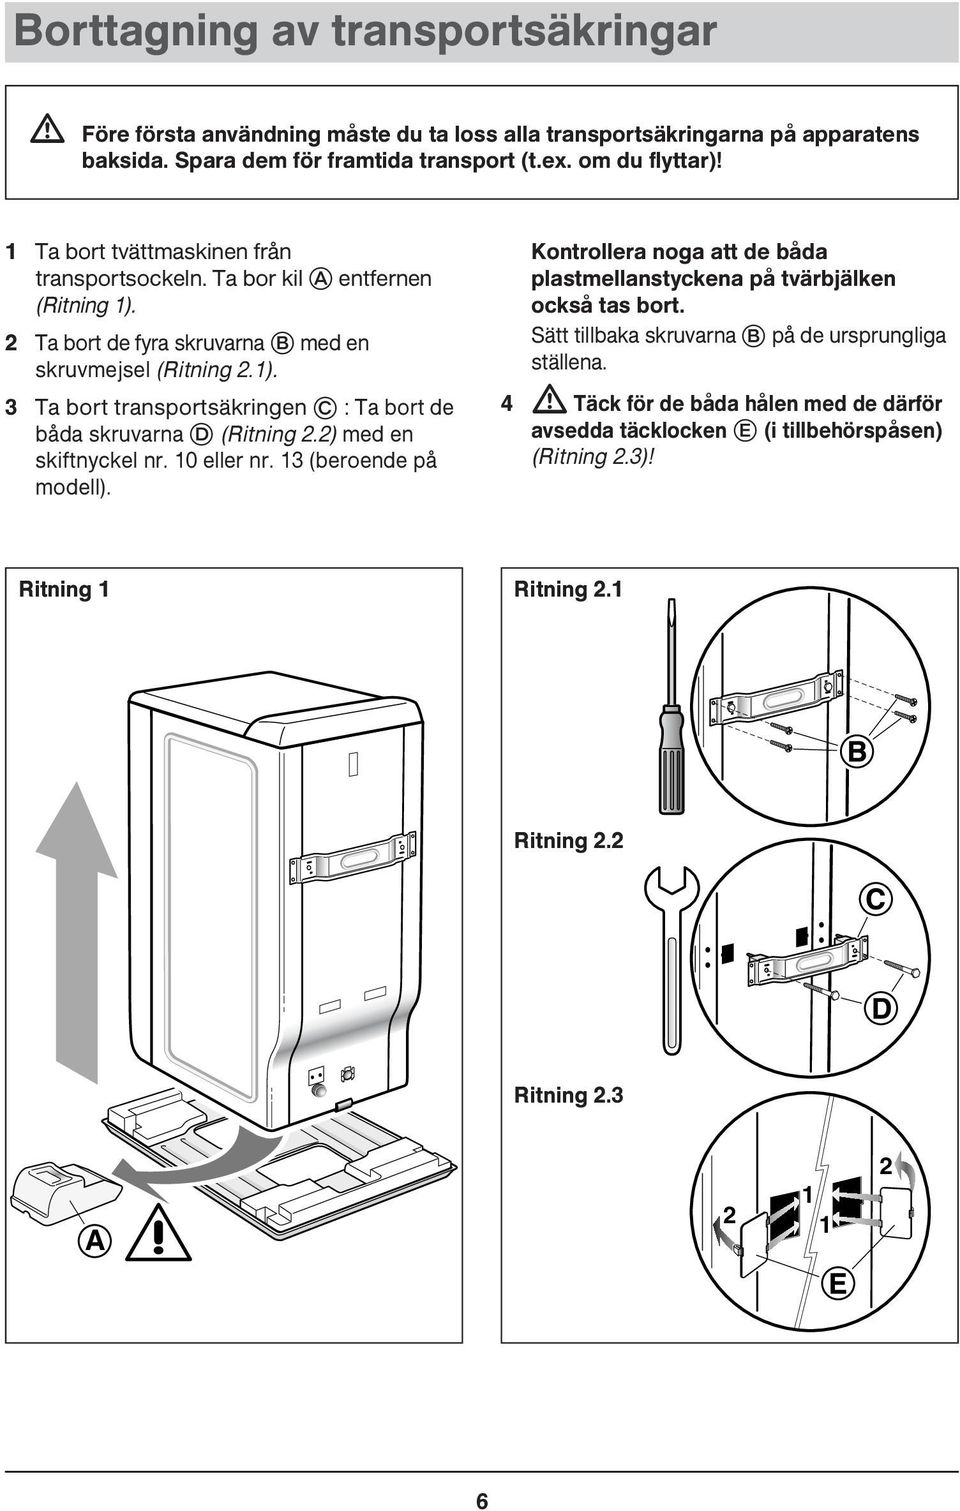 2) med en skiftnyckel nr. 10 eller nr. 13 (beroende på modell). Kontrollera noga att de båda plastmellanstyckena på tvärbjälken också tas bort.